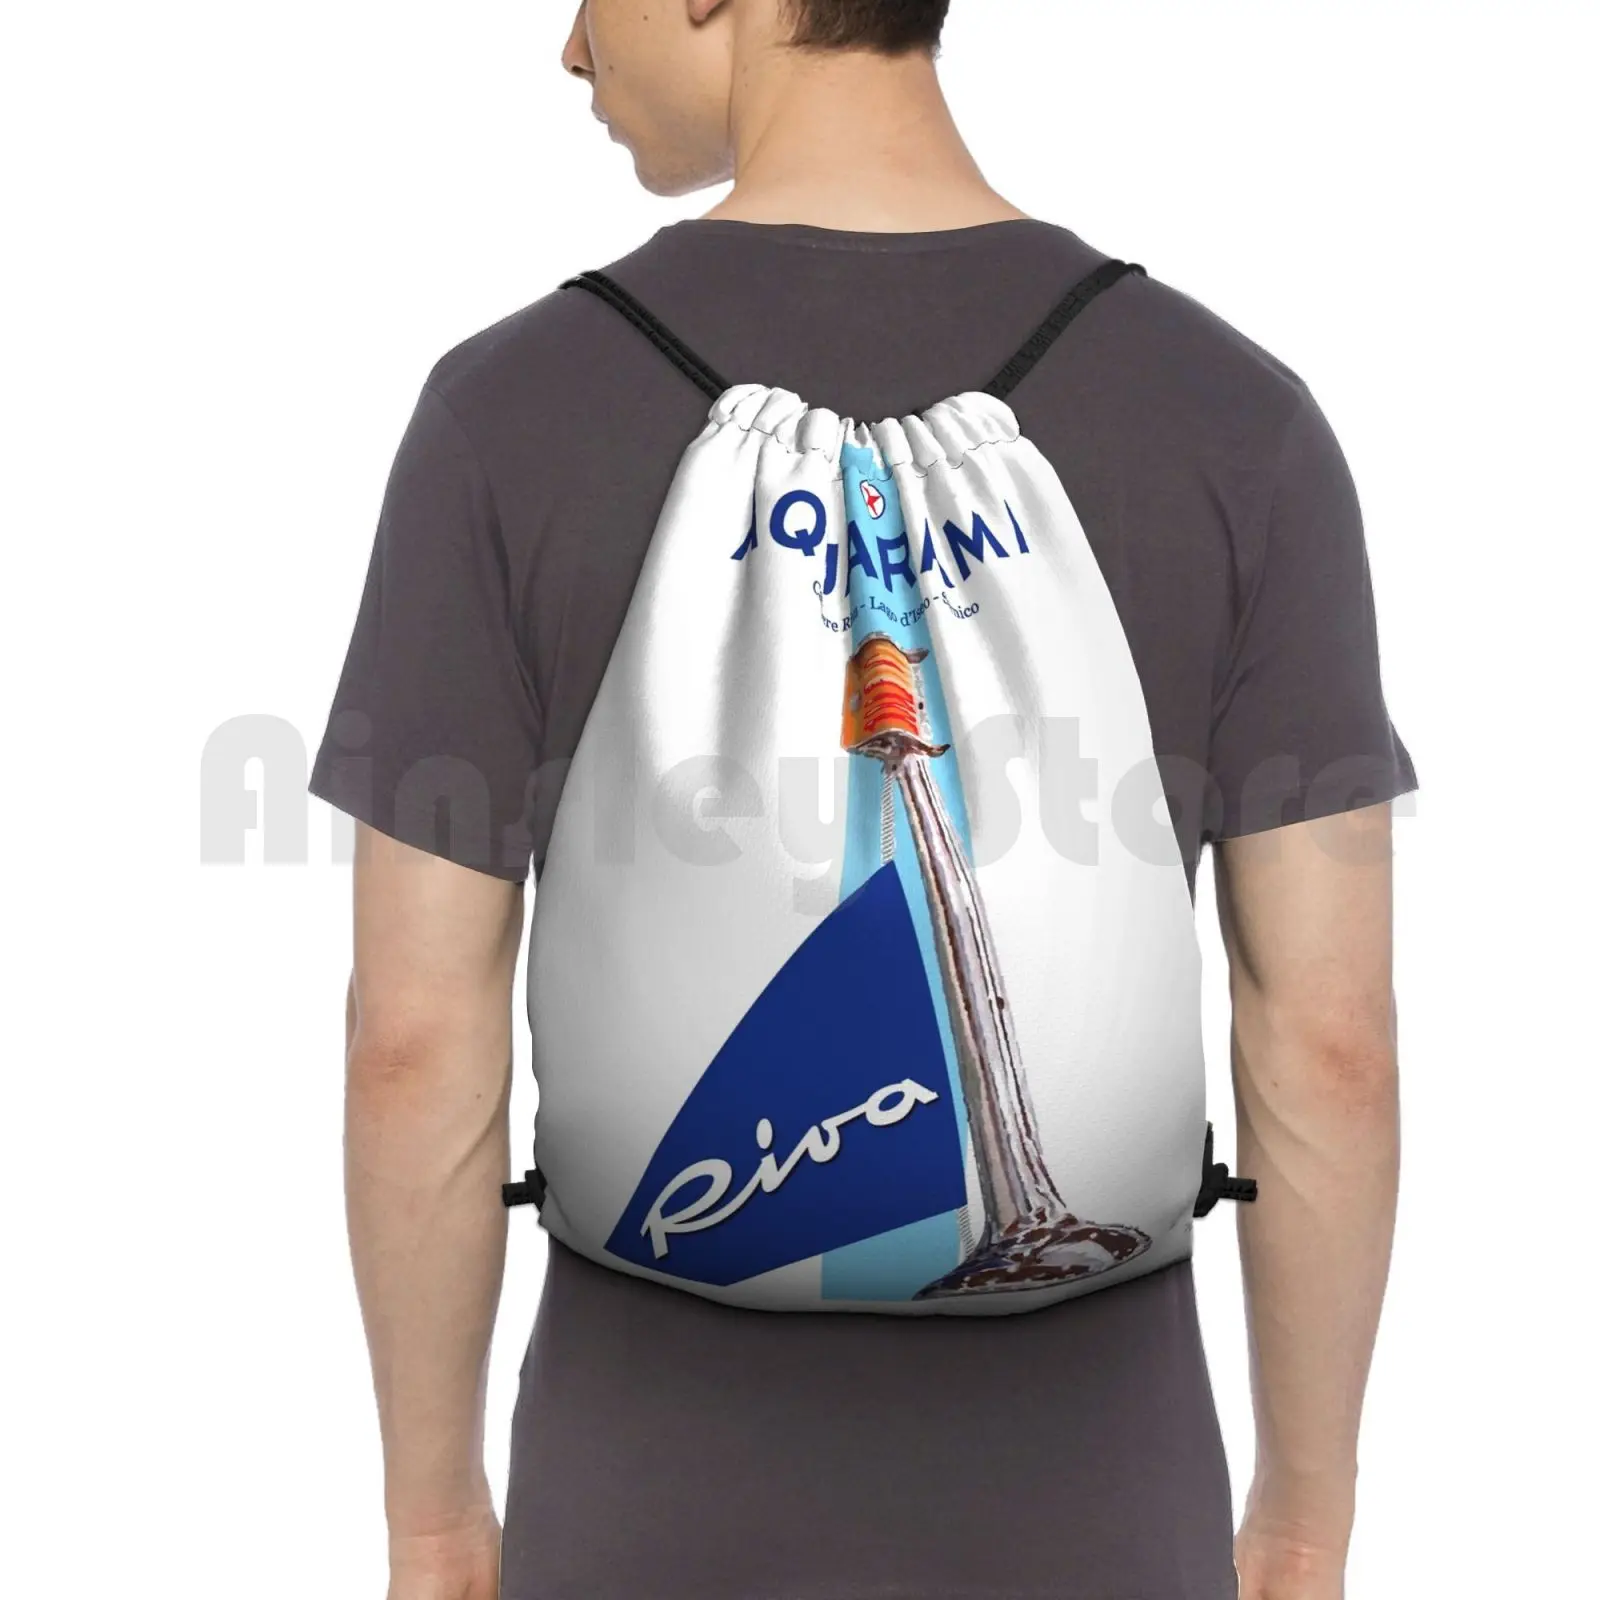 Винтажный рюкзак Riva aquapex, дизайнерский дорожный ранец на шнурке для поездок, скалолазания и спортзала, Италия